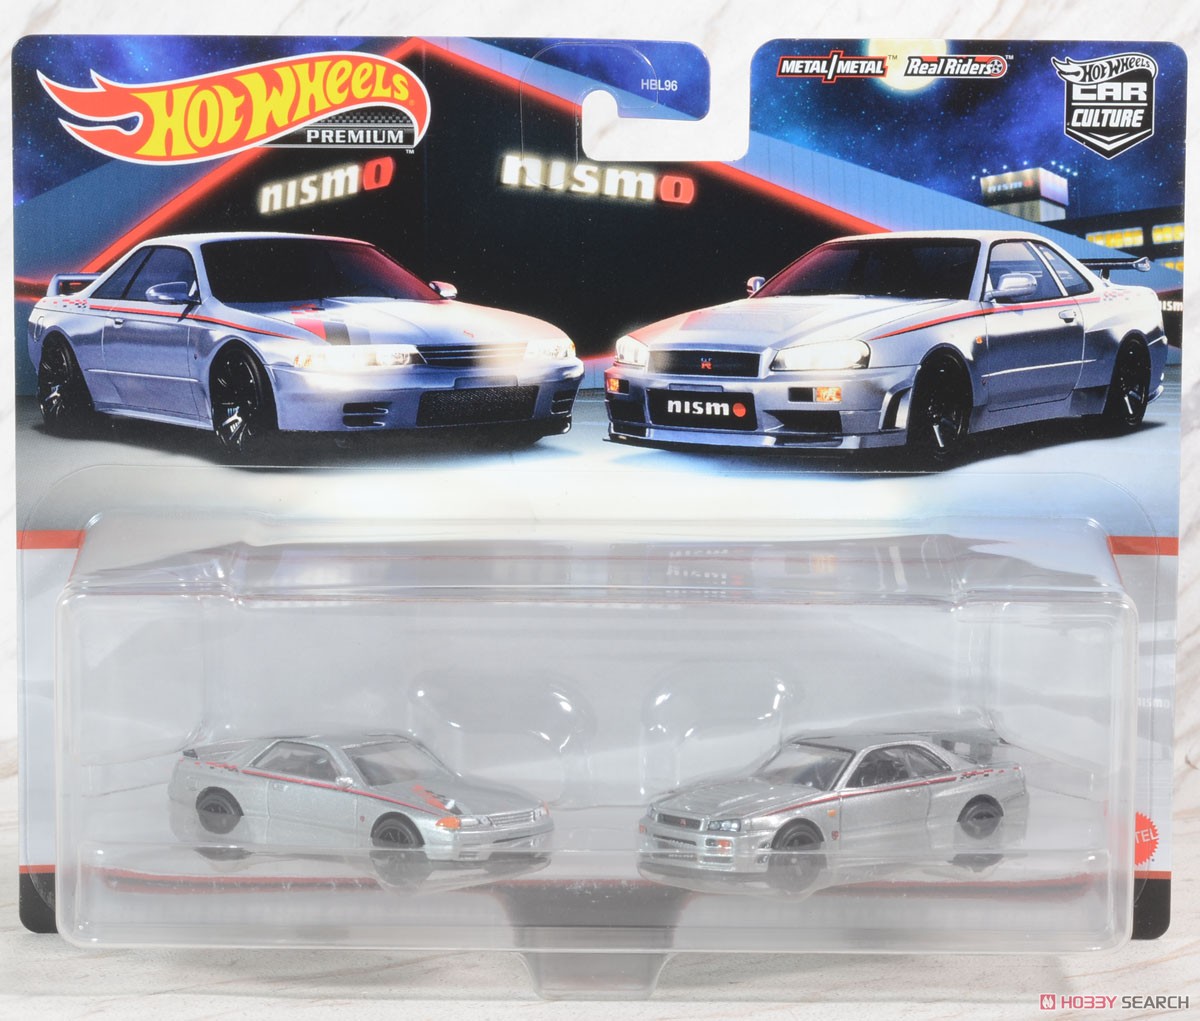 Hot Wheels Premium 2 packs Nissan Skyline GT-R (Toy) Package1